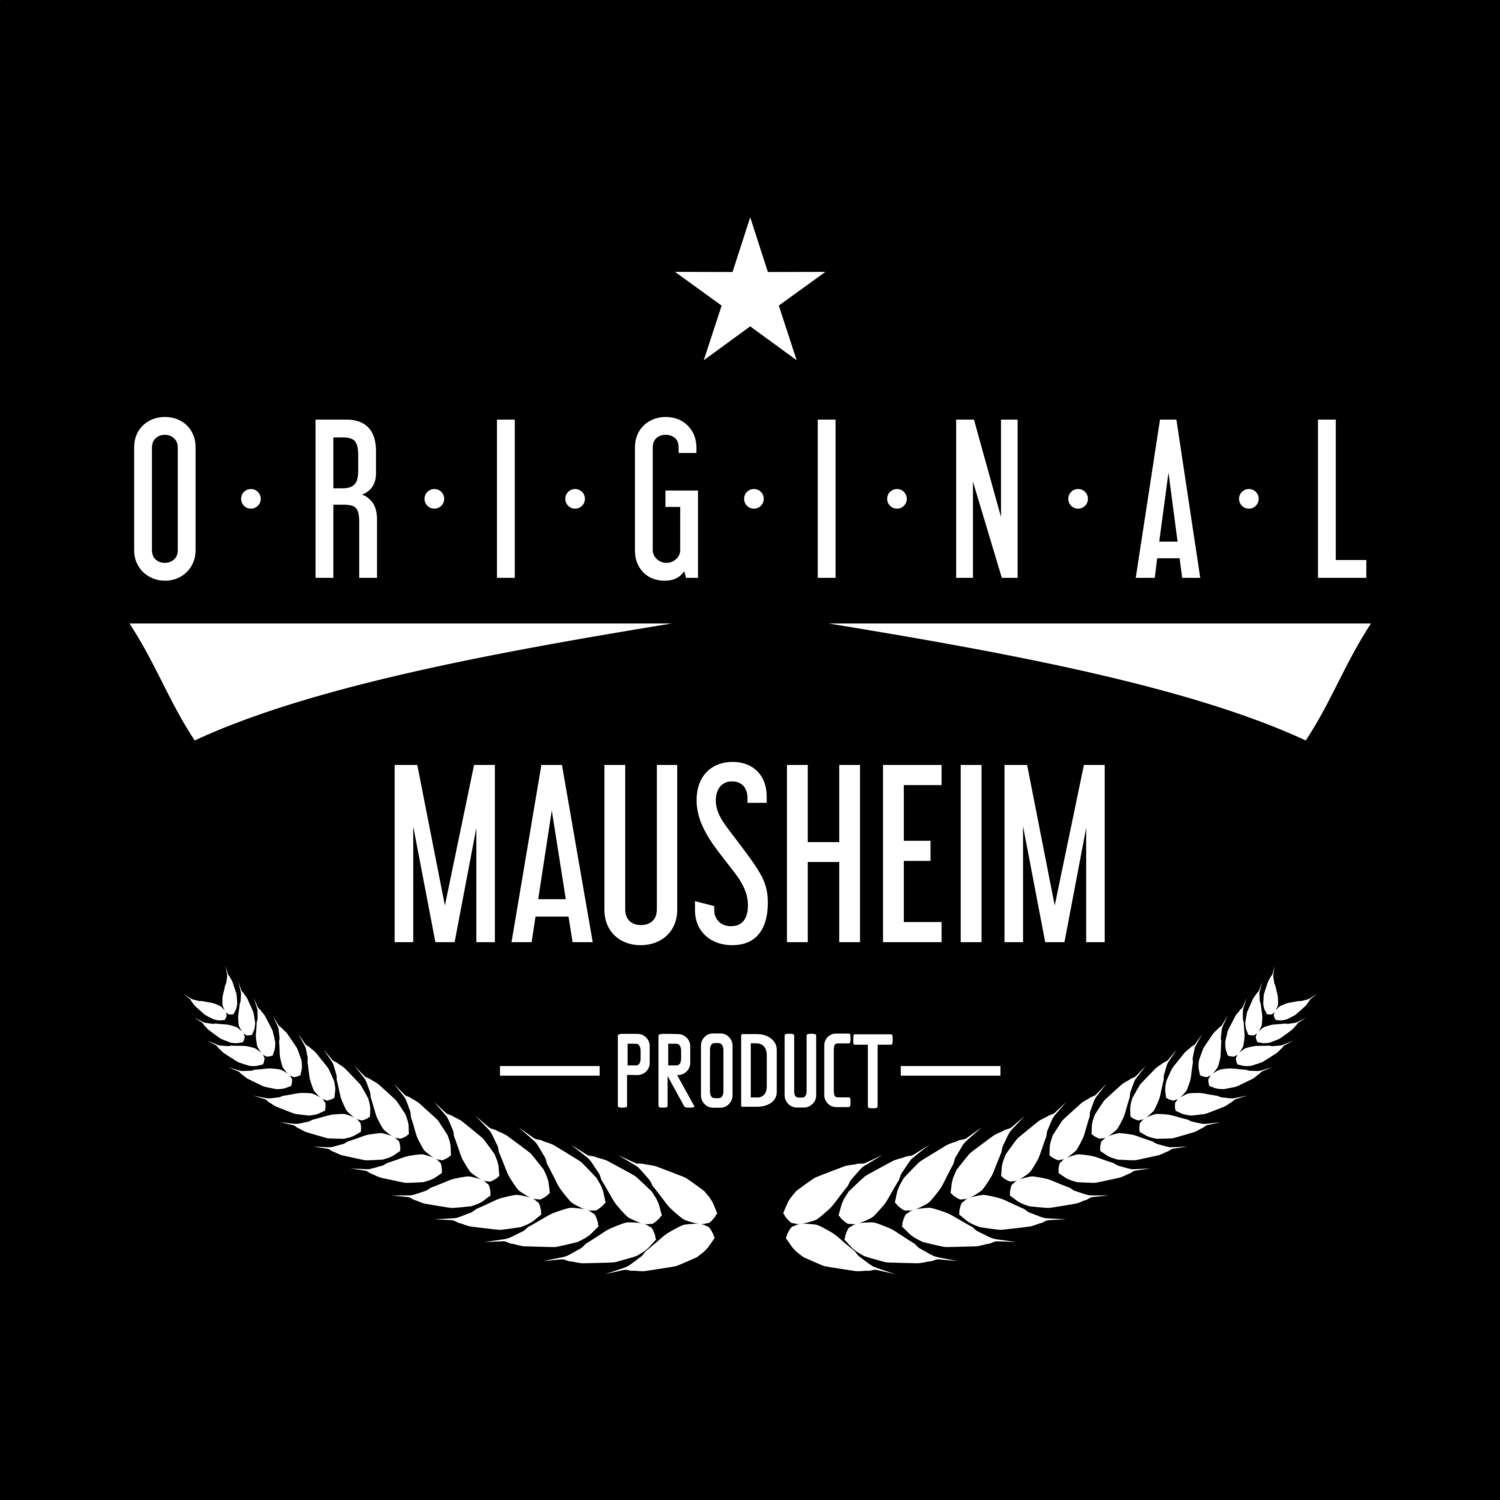 Mausheim T-Shirt »Original Product«